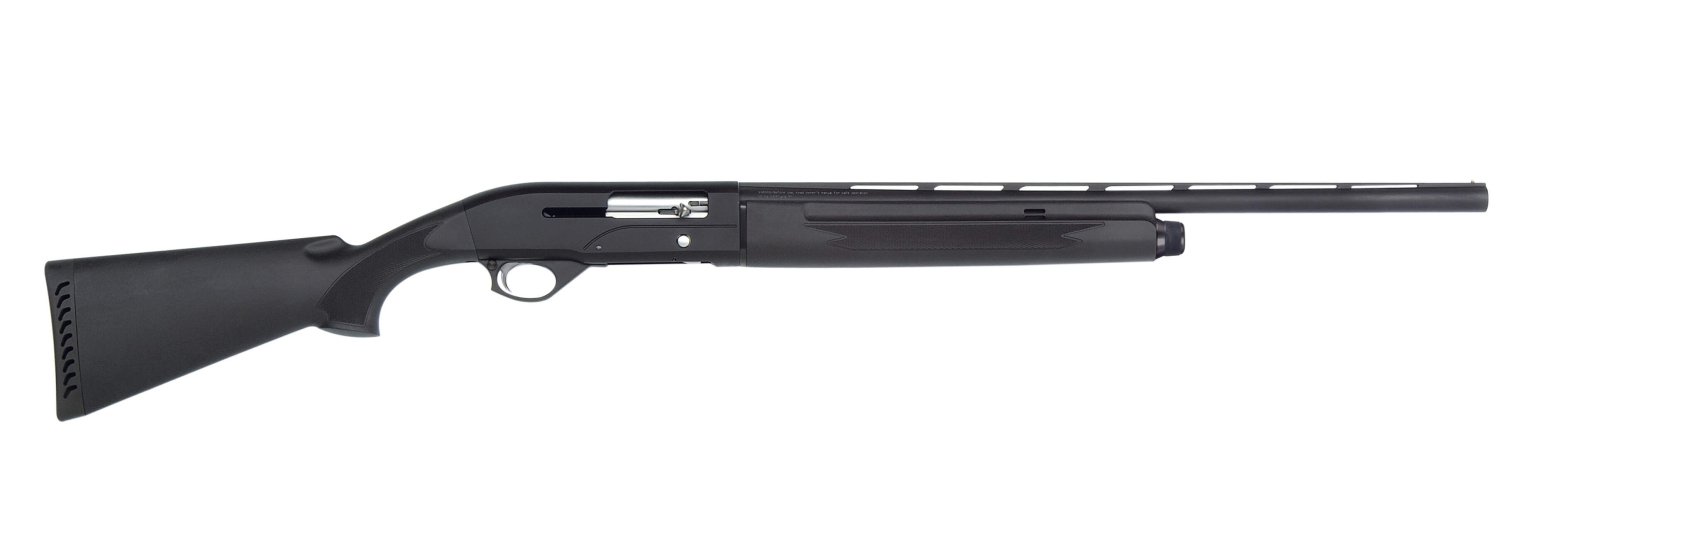 Mossberg SA20 semi-auto shotgun